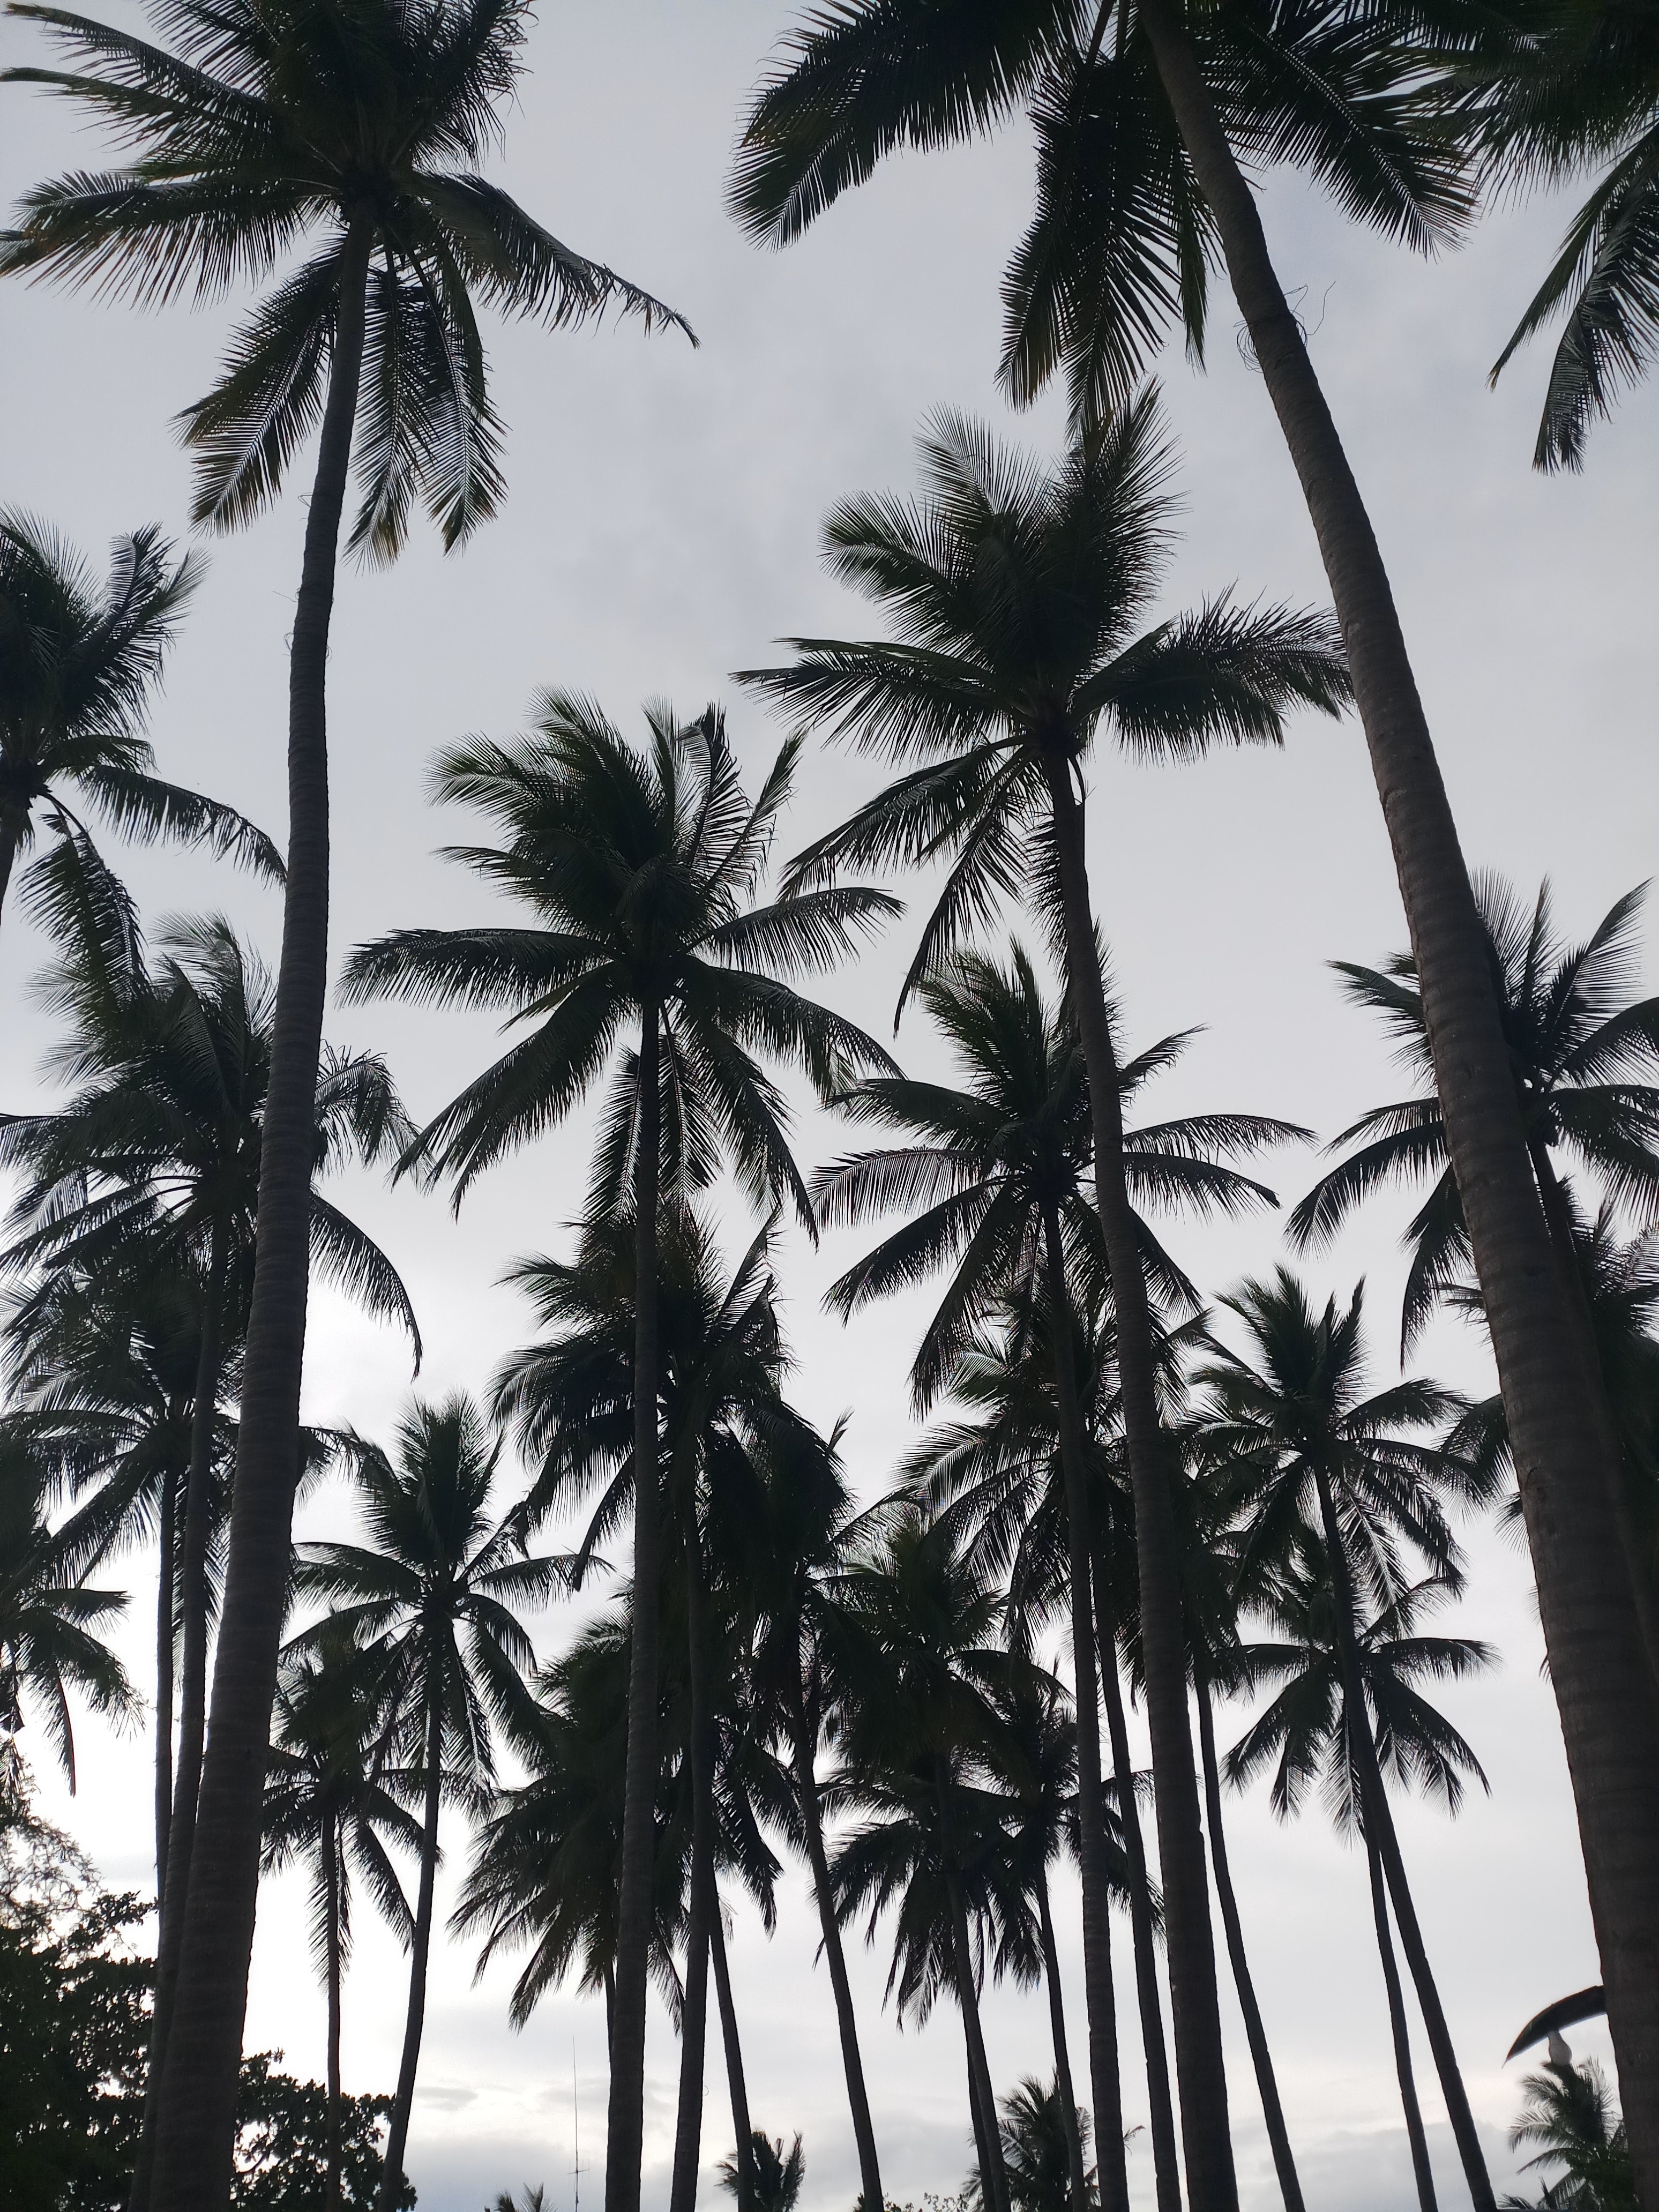 1080p pic bw, nature, palms, chb